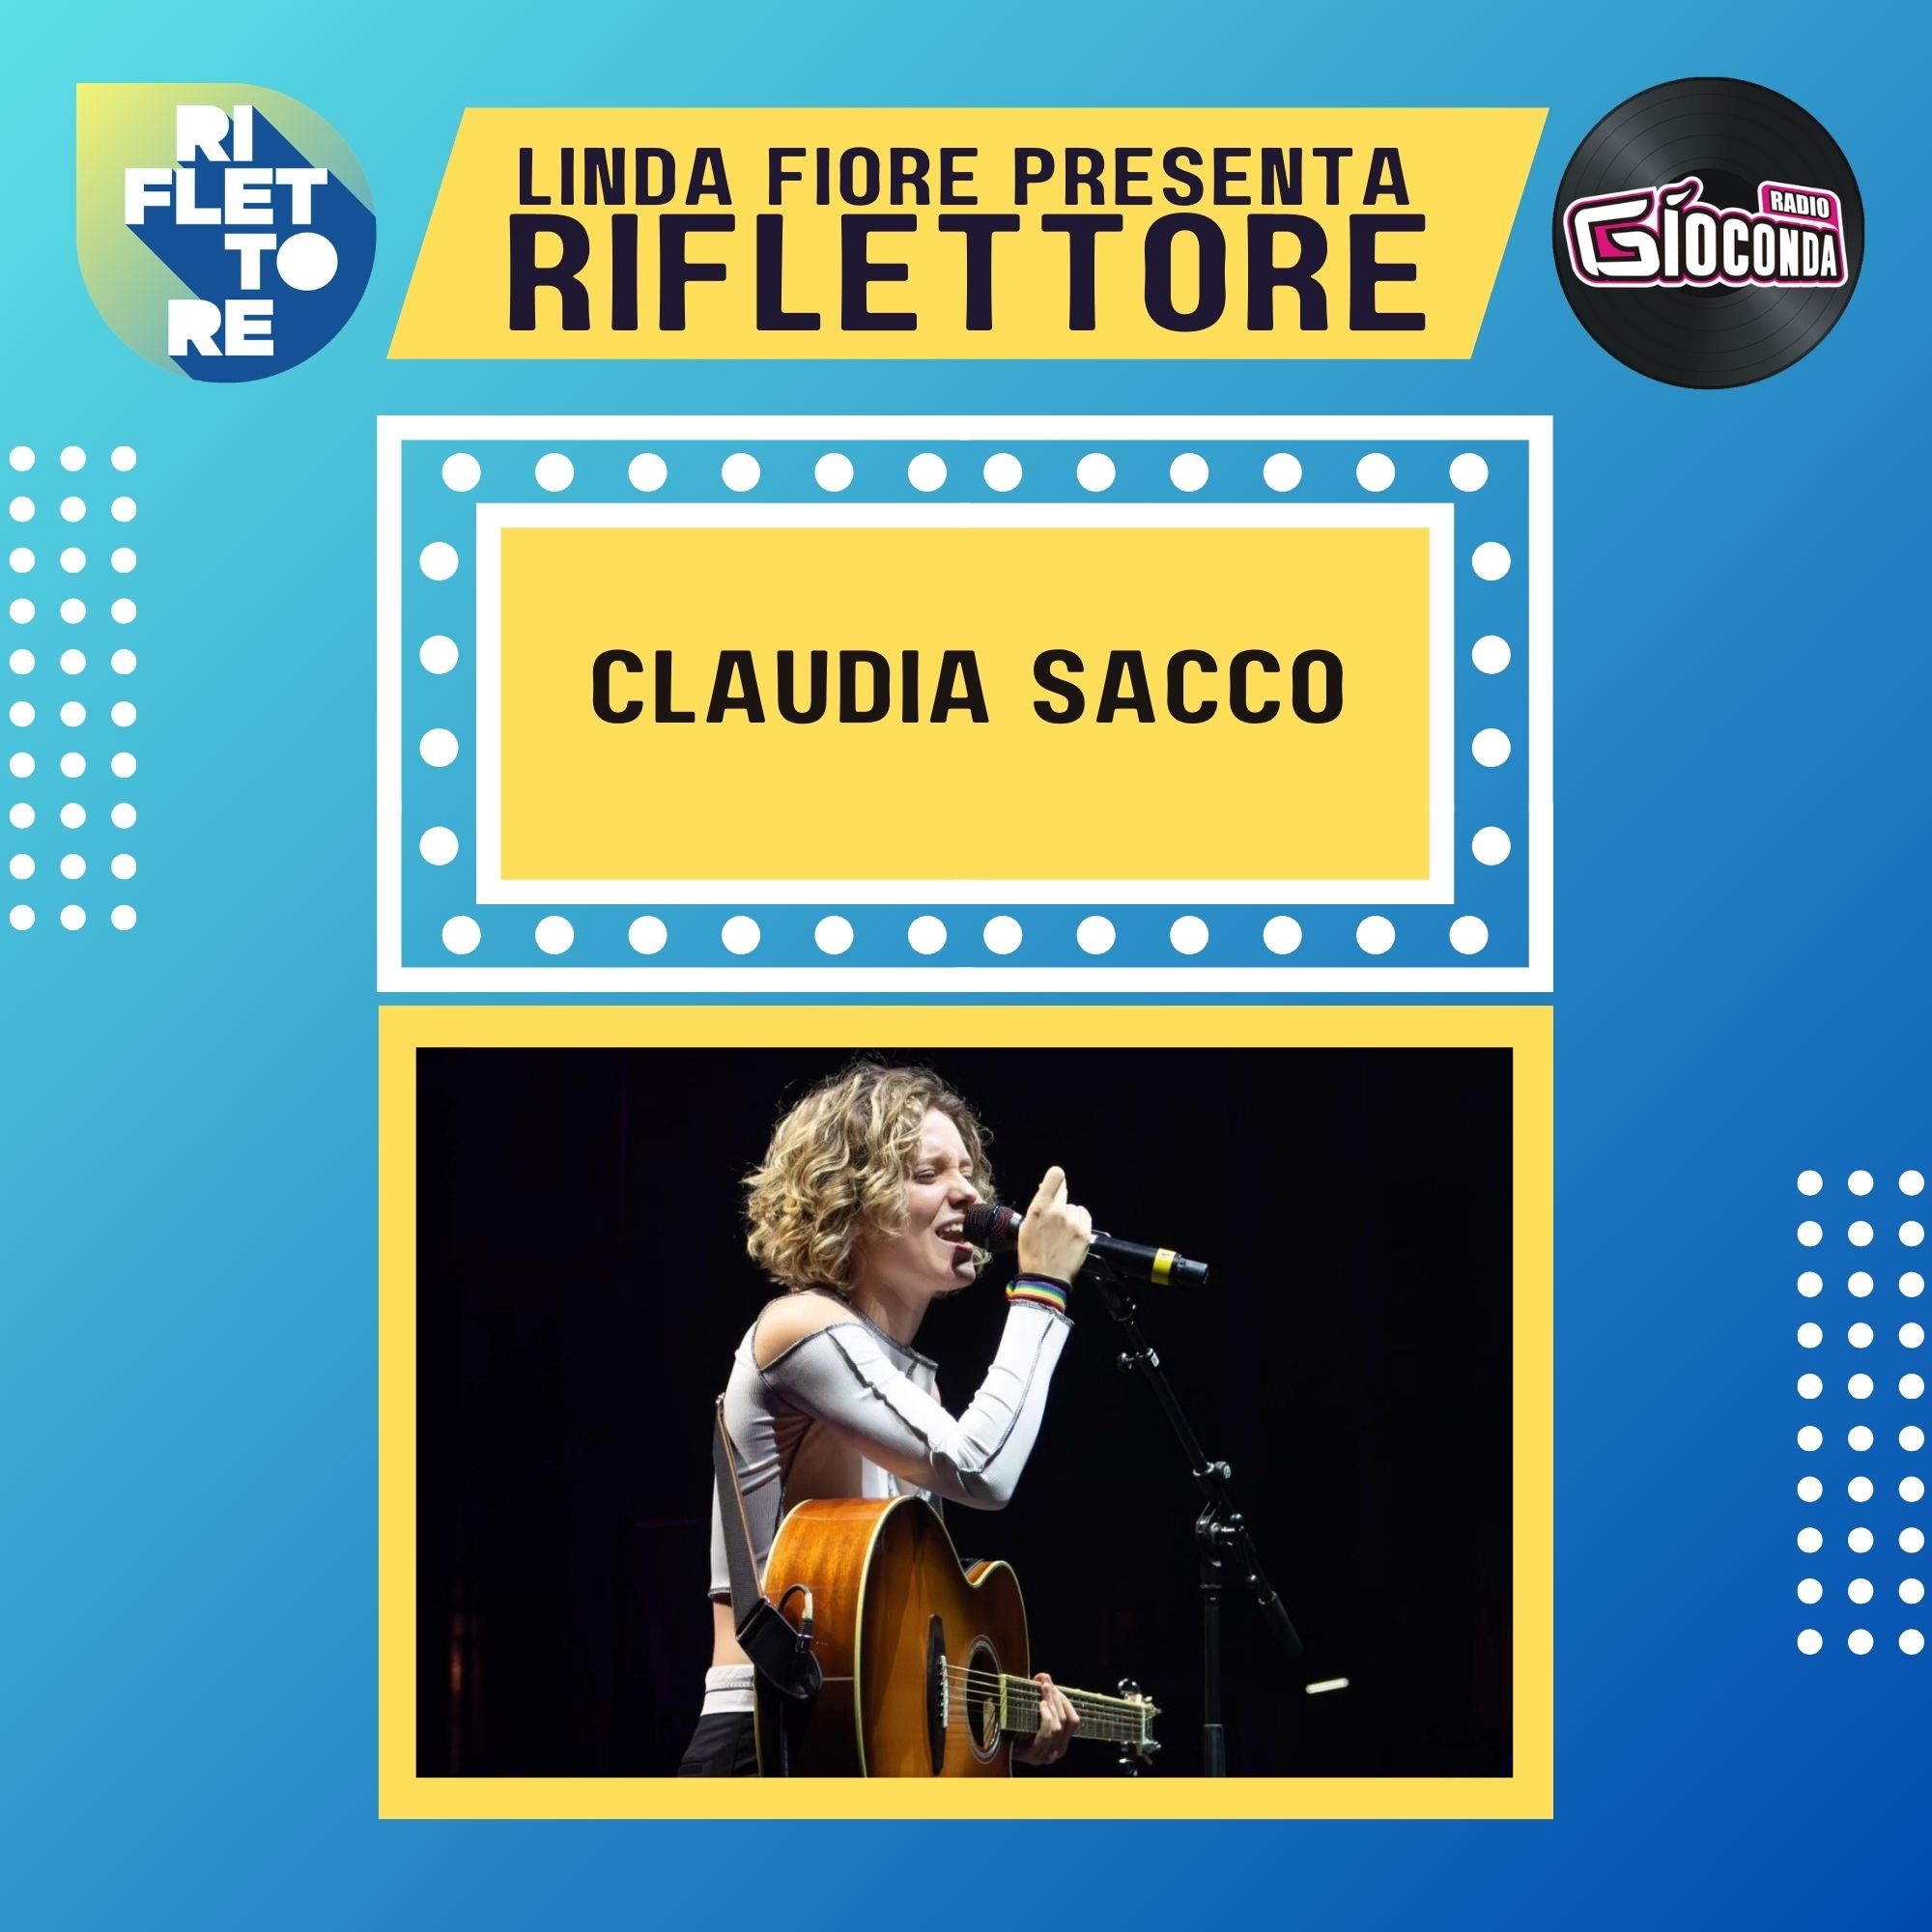 Riflettore con Claudia Sacco, la vincitrice della 36a edizione di Percoto Canta